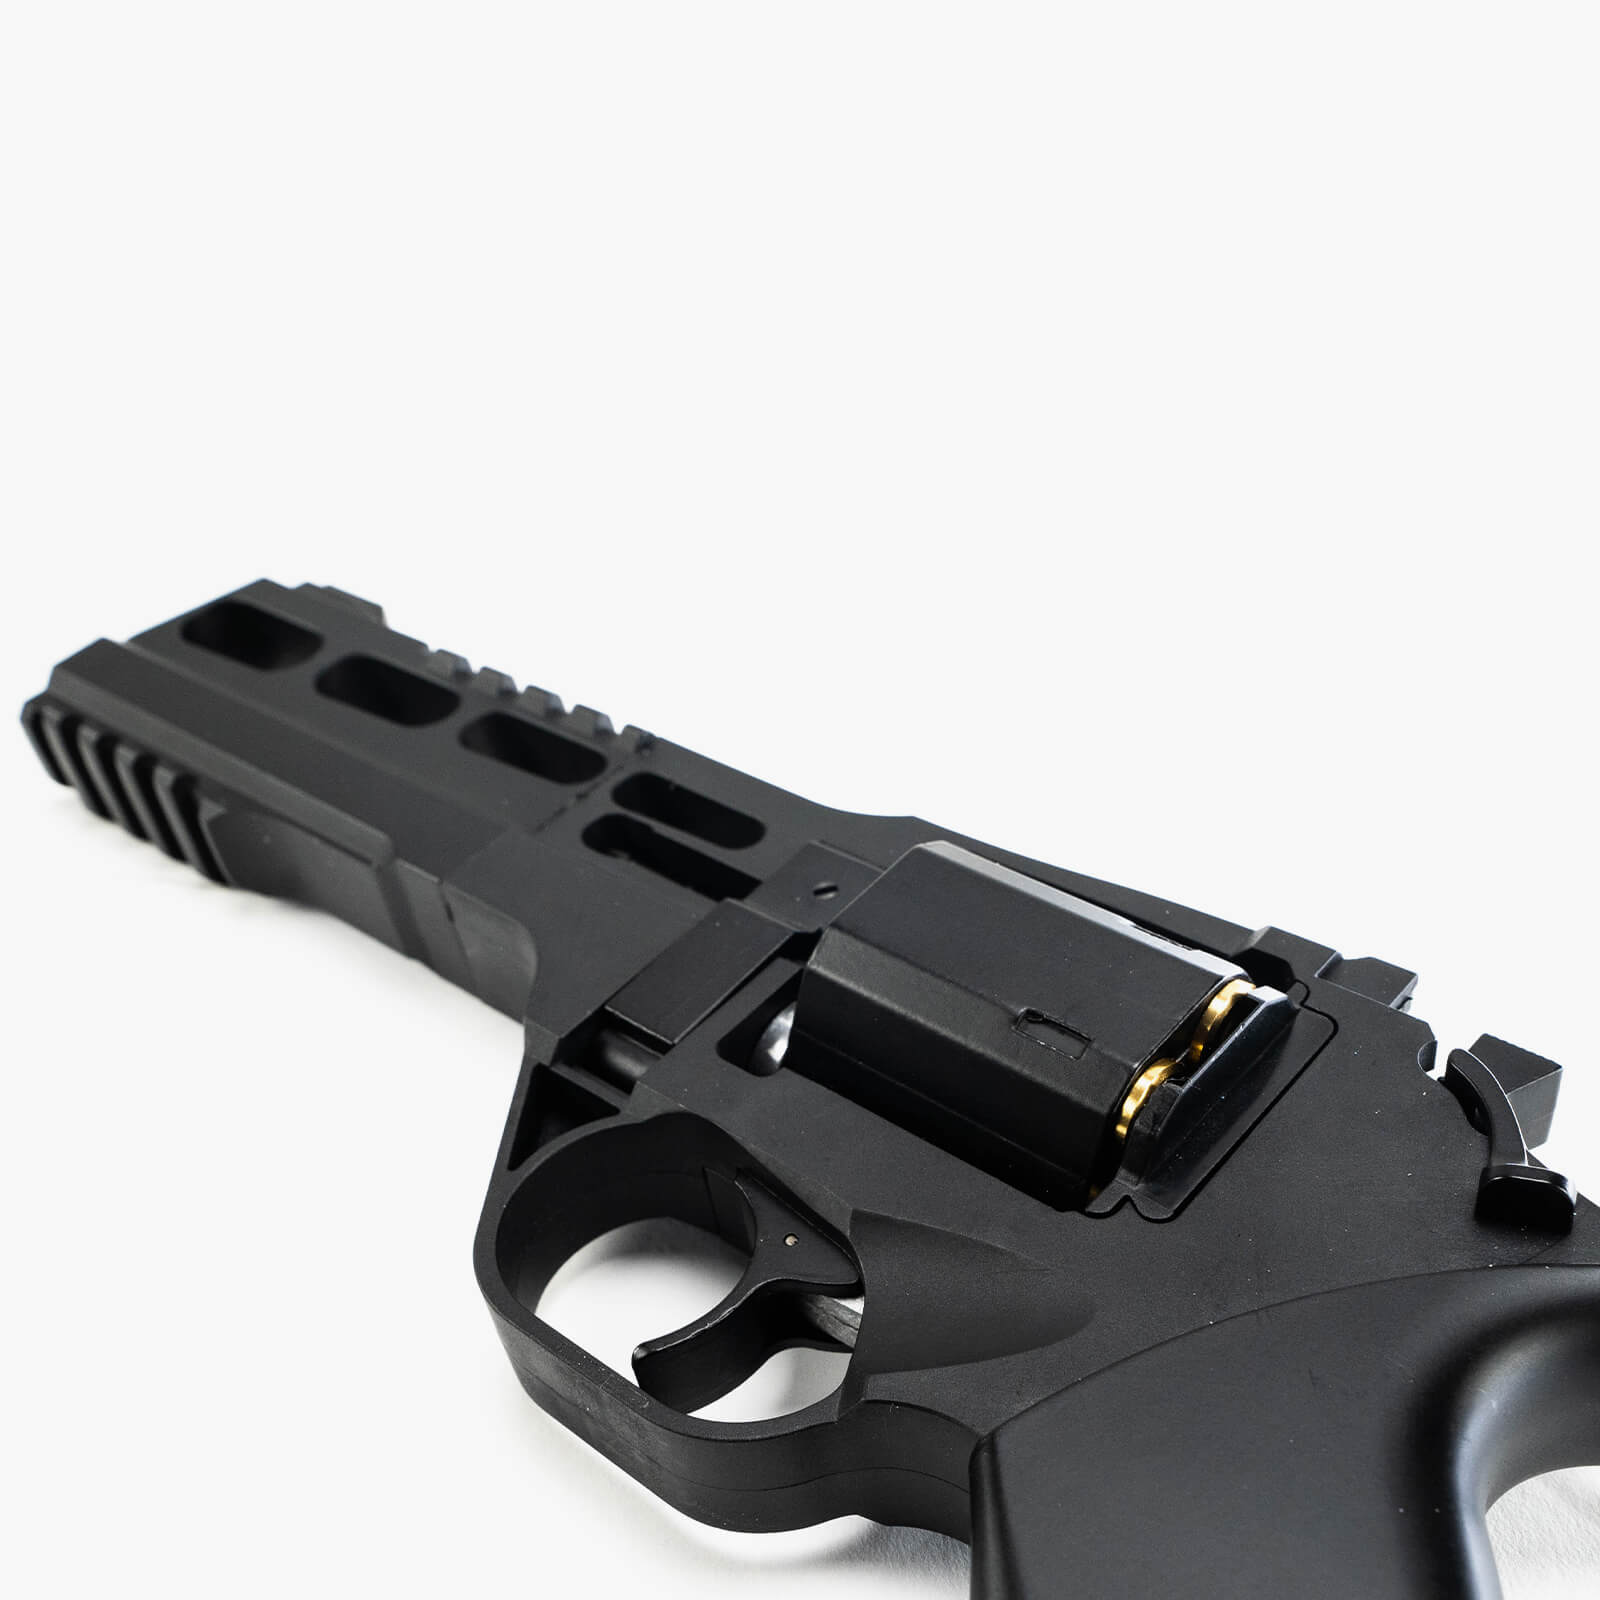 Rhino Revolver 60DS Toy